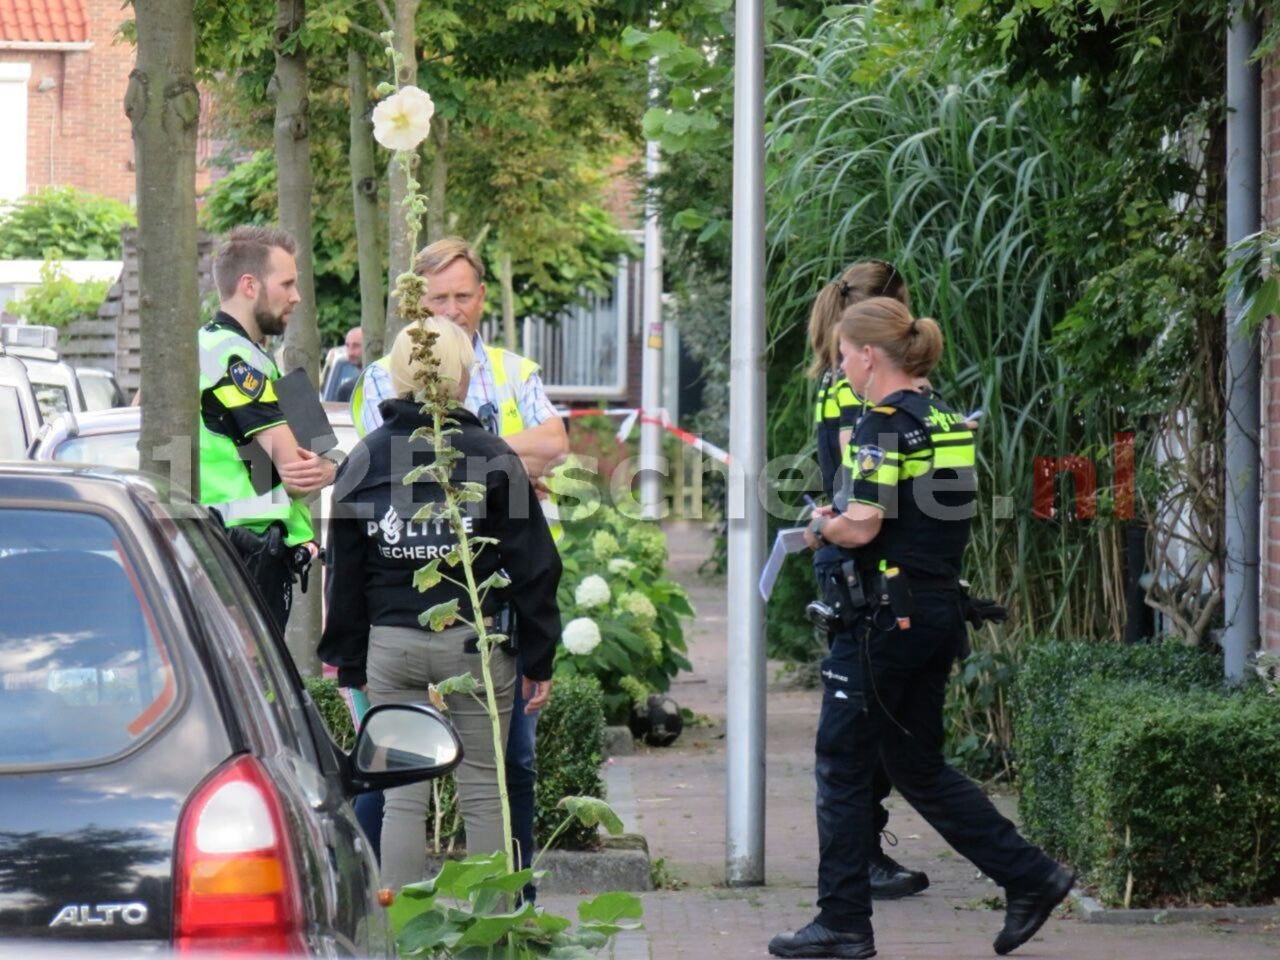 Dode vrouw in woning Enschede, politie houdt ernstig rekening met misdrijf, Team Grootschalige Opsporing doet onderzoek